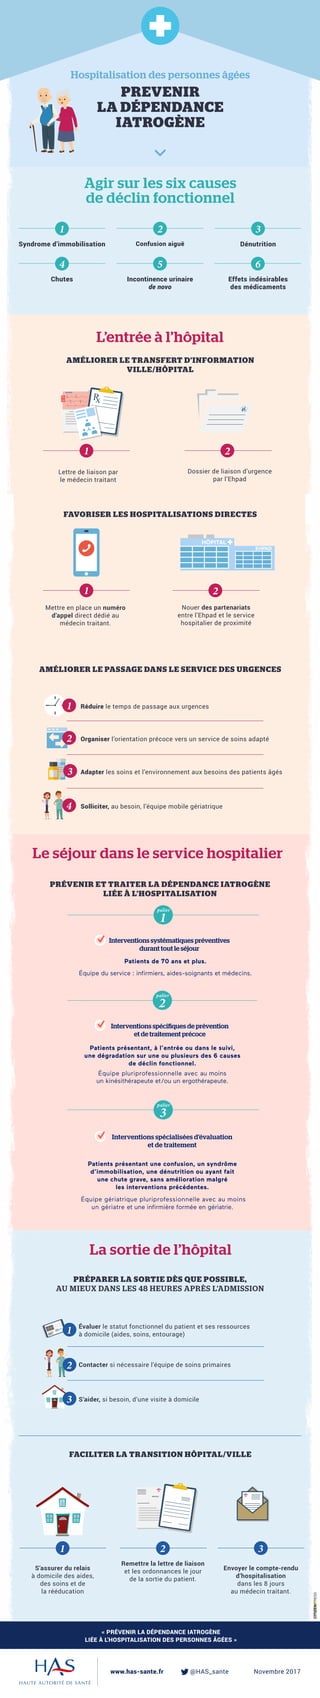 tran
Hospitalisation des personnes âgées
PREVENIR
LA DÉPENDANCE
IATROGÈNE
« PRÉVENIR LA DÉPENDANCE IATROGÈNE
LIÉE À L’HOSPITALISATION DES PERSONNES ÂGÉES »
www.has-sante.fr 		 @HAS_sante		 Novembre 2017
L’entrée à l’hôpital
AMÉLIORER LE PASSAGE DANS LE SERVICE DES URGENCES
Réduire le temps de passage aux urgences
Solliciter, au besoin, l’équipe mobile gériatrique
Adapter les soins et l’environnement aux besoins des patients âgés
Organiser l’orientation précoce vers un service de soins adapté
Dossier de liaison d’urgence
par l’Ehpad
2
Agir sur les six causes
de déclin fonctionnel
Syndrome d’immobilisation Confusion aiguë Dénutrition
Chutes Incontinence urinaire
de novo
Effets indésirables
des médicaments
1 2 3
4 5 6
1
3
2
PRÉVENIR ET TRAITER LA DÉPENDANCE IATROGÈNE
LIÉE À L’HOSPITALISATION
Interventions systématiques préventives
durant tout le séjour
Patients de 70 ans et plus.
Équipe du service : infirmiers, aides-soignants et médecins.
Interventions spécifiques de prévention
et de traitement précoce
Patients présentant, à l’entrée ou dans le suivi,
une dégradation sur une ou plusieurs des 6 causes
de déclin fonctionnel.
Équipe pluriprofessionnelle avec au moins
un kinésithérapeute et/ou un ergothérapeute.
Interventions spécialisées d’évaluation
et de traitement
Patients présentant une confusion, un syndrôme
d’immobilisation, une dénutrition ou ayant fait
une chute grave, sans amélioration malgré
les interventions précédentes.
Équipe gériatrique pluriprofessionnelle avec au moins
un gériatre et une infirmière formée en gériatrie.
palier
1
palier
2
palier
3
4
PRÉPARER LA SORTIE DÈS QUE POSSIBLE,
AU MIEUX DANS LES 48 HEURES APRÈS L’ADMISSION
S’aider, si besoin, d’une visite à domicile
FACILITER LA TRANSITION HÔPITAL/VILLE
Évaluer le statut fonctionnel du patient et ses ressources
à domicile (aides, soins, entourage)1
Envoyer le compte-rendu
d’hospitalisation
dans les 8 jours
au médecin traitant.
3
S’assurer du relais
à domicile des aides,
des soins et de
la rééducation
1
Remettre la lettre de liaison
et les ordonnances le jour
de la sortie du patient.
2
Contacter si nécessaire l’équipe de soins primaires2
AMÉLIORER LE TRANSFERT D’INFORMATION
VILLE/HÔPITAL
FAVORISER LES HOSPITALISATIONS DIRECTES
Le séjour dans le service hospitalier
1
Mettre en place un numéro
d’appel direct dédié au
médecin traitant.
1
Lettre de liaison par
le médecin traitant
La sortie de l’hôpital
Nouer des partenariats
entre l’Ehpad et le service
hospitalier de proximité
2
HÔPITAL
EHPAD
3
 